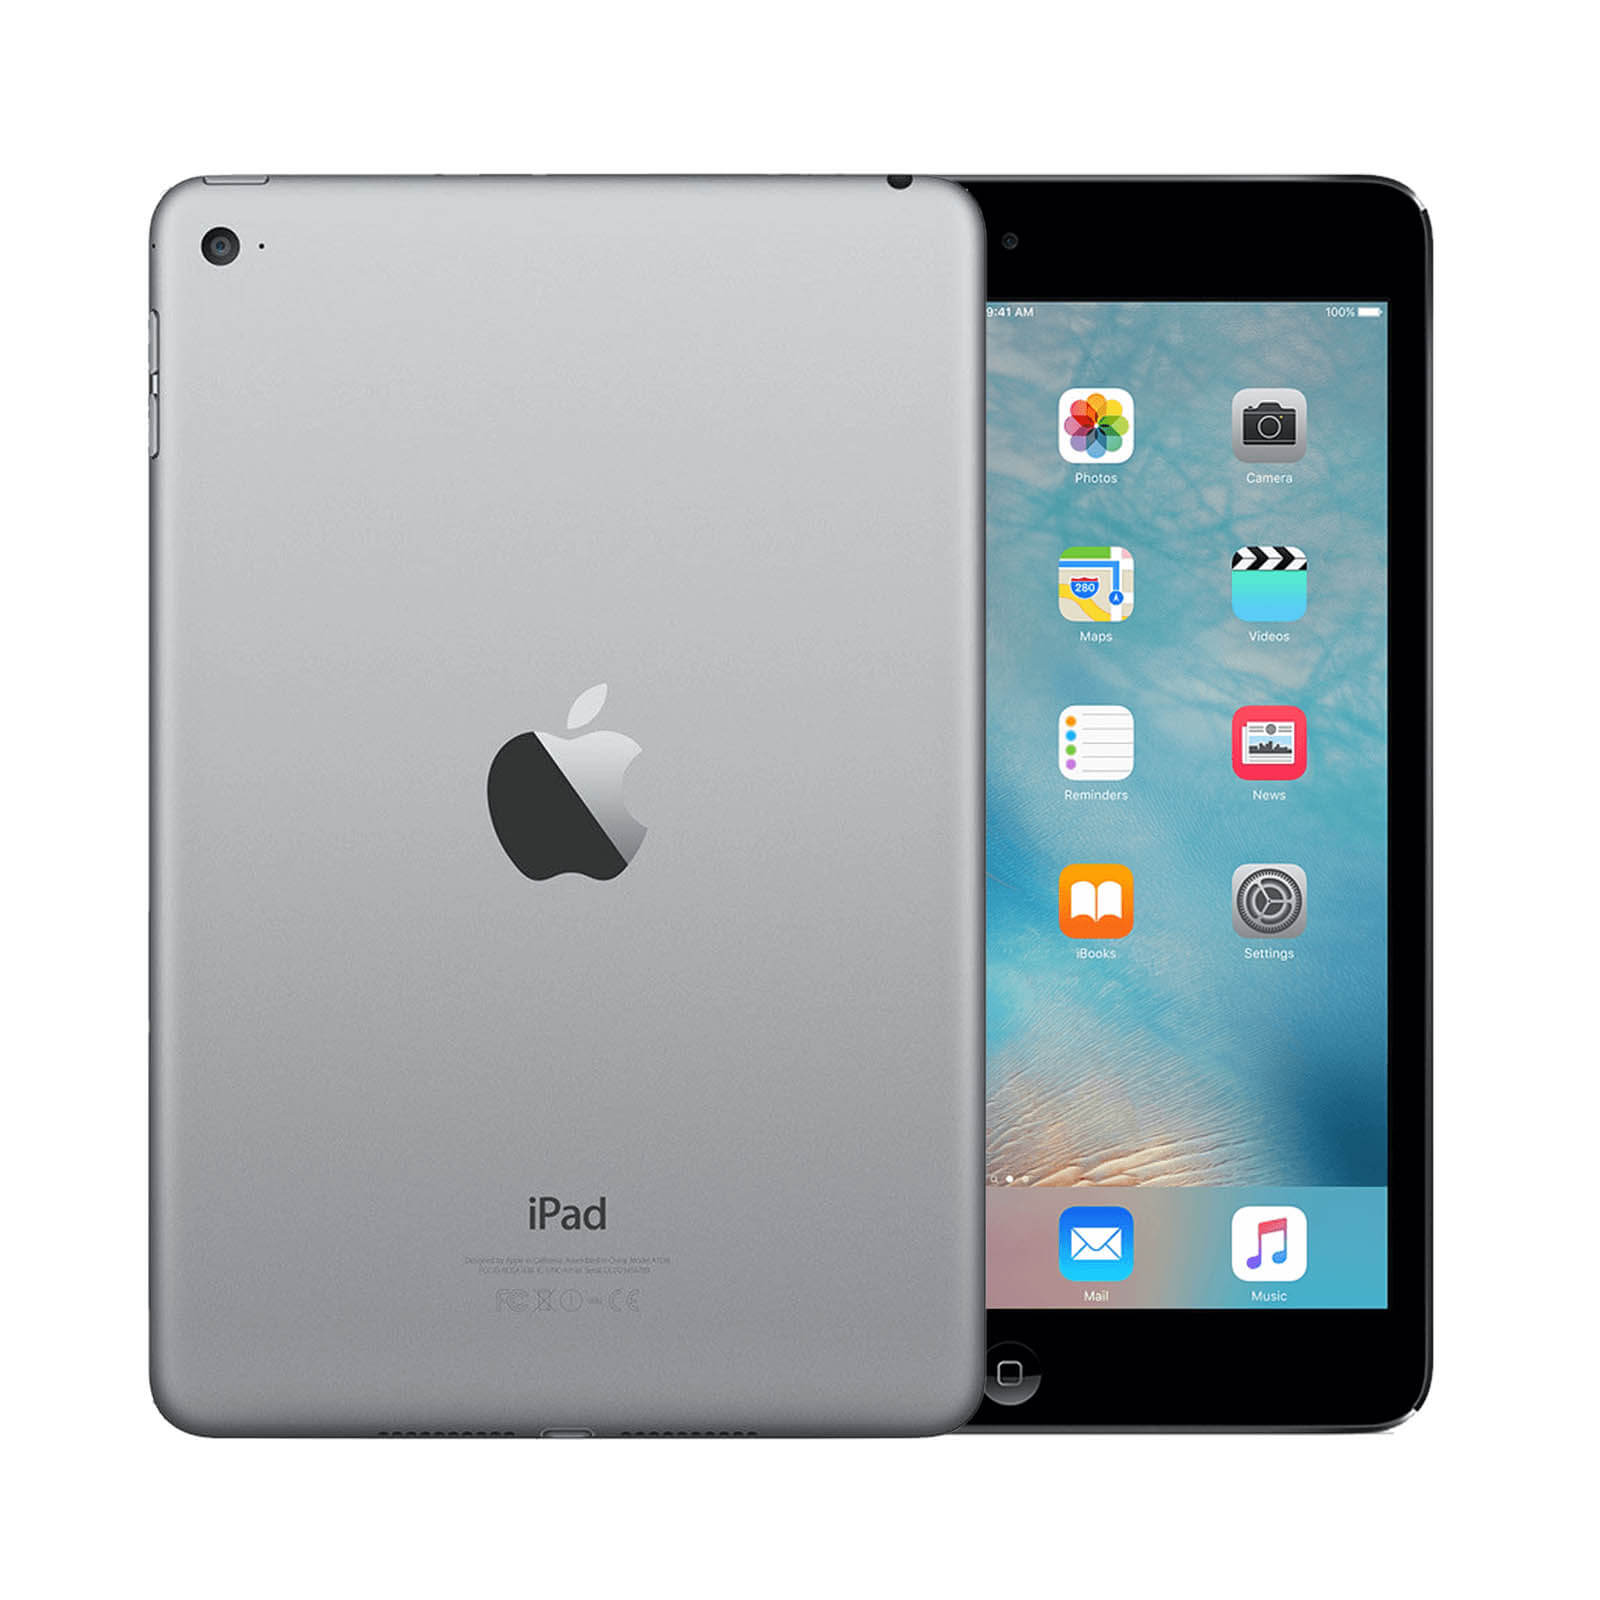 Apple iPad Mini 4 32GB Space Grey WiFi - Good 32GB Space Grey Good